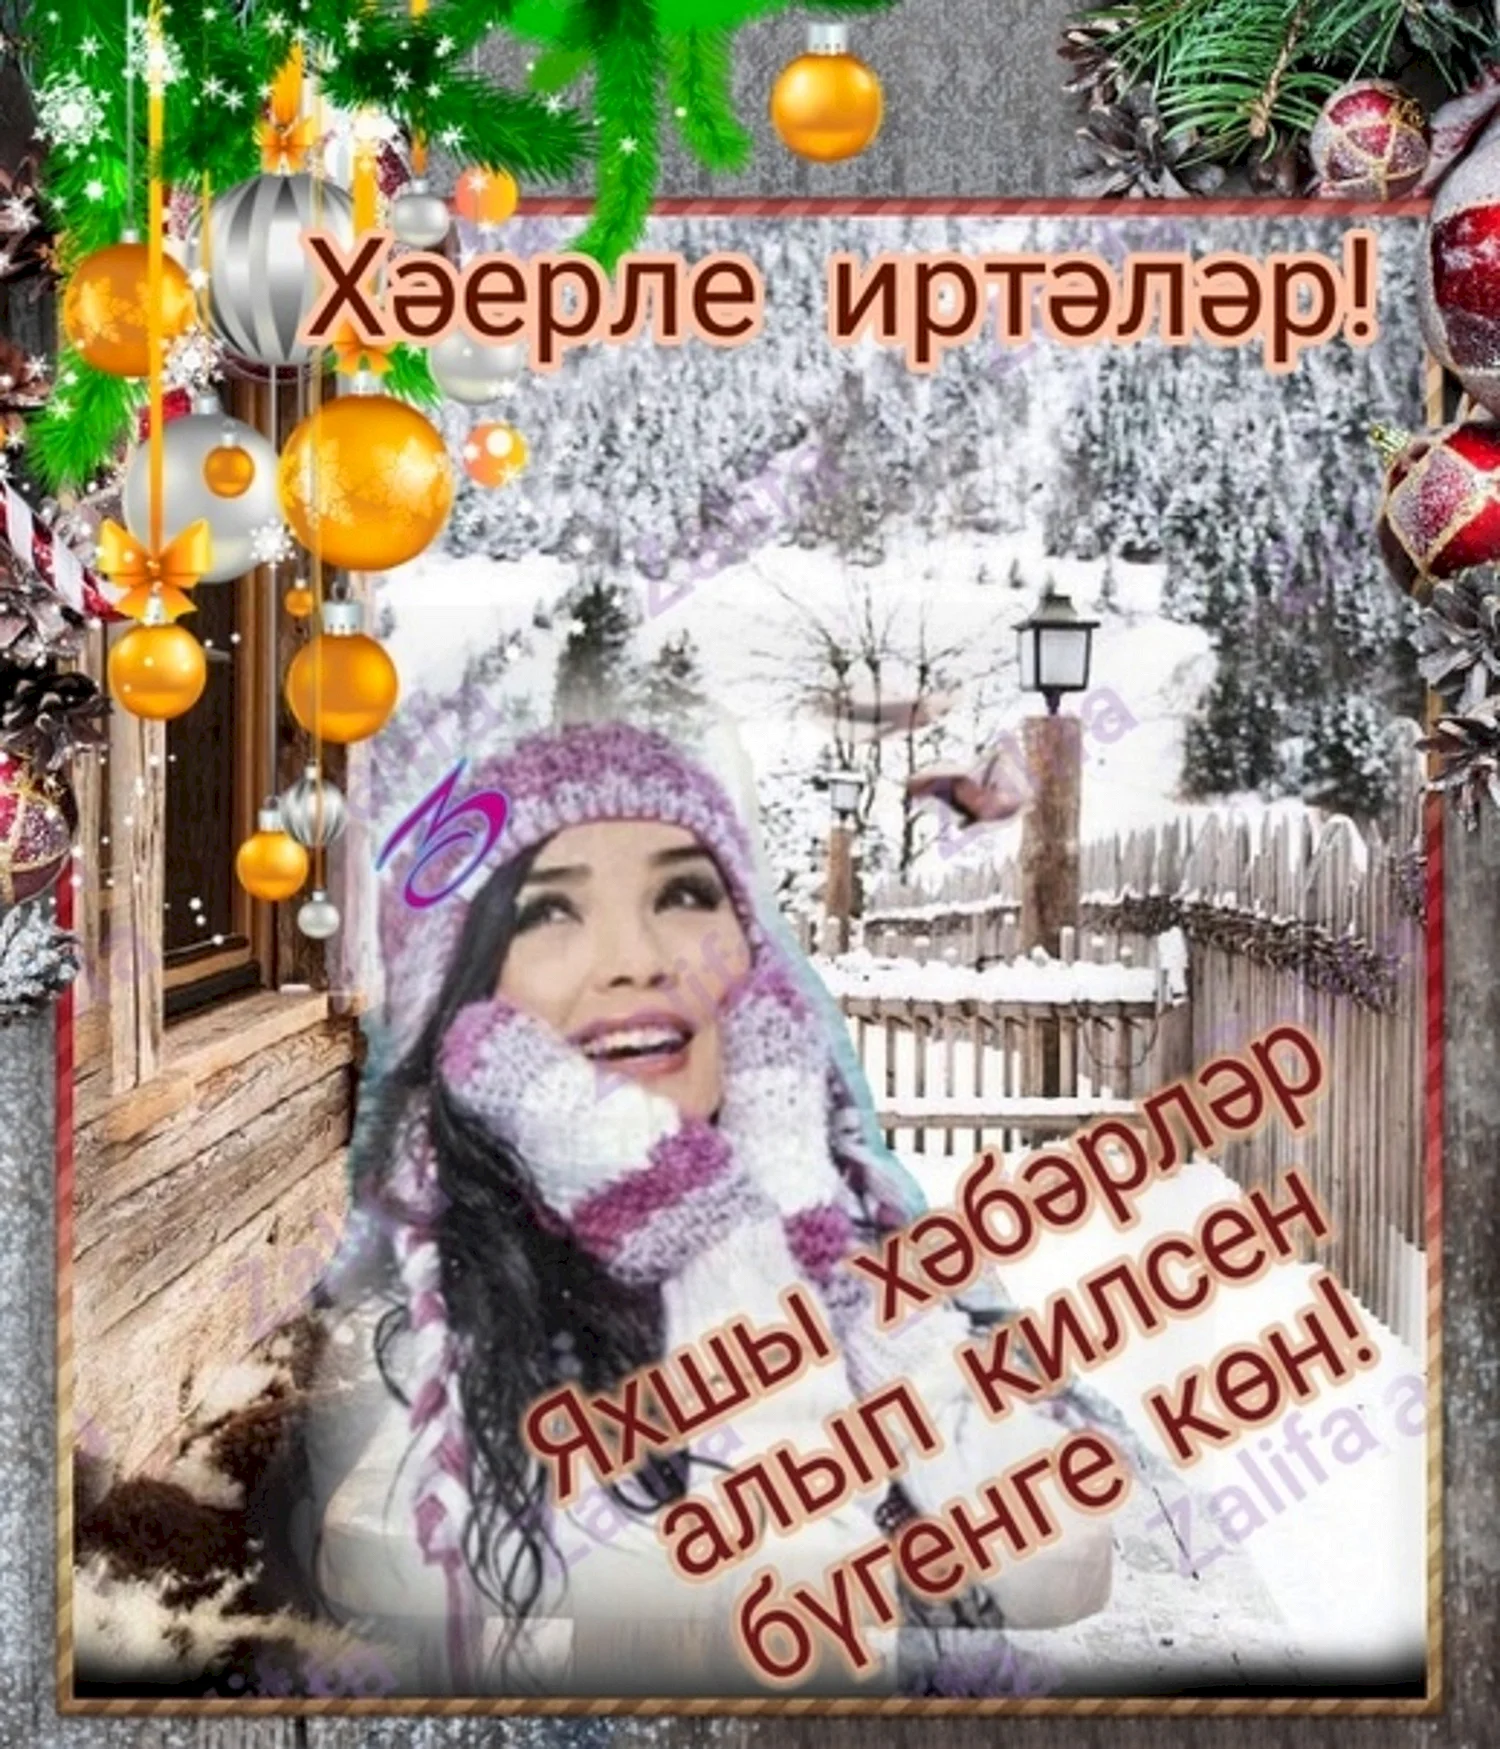 Зимние пожелания на татарском языке